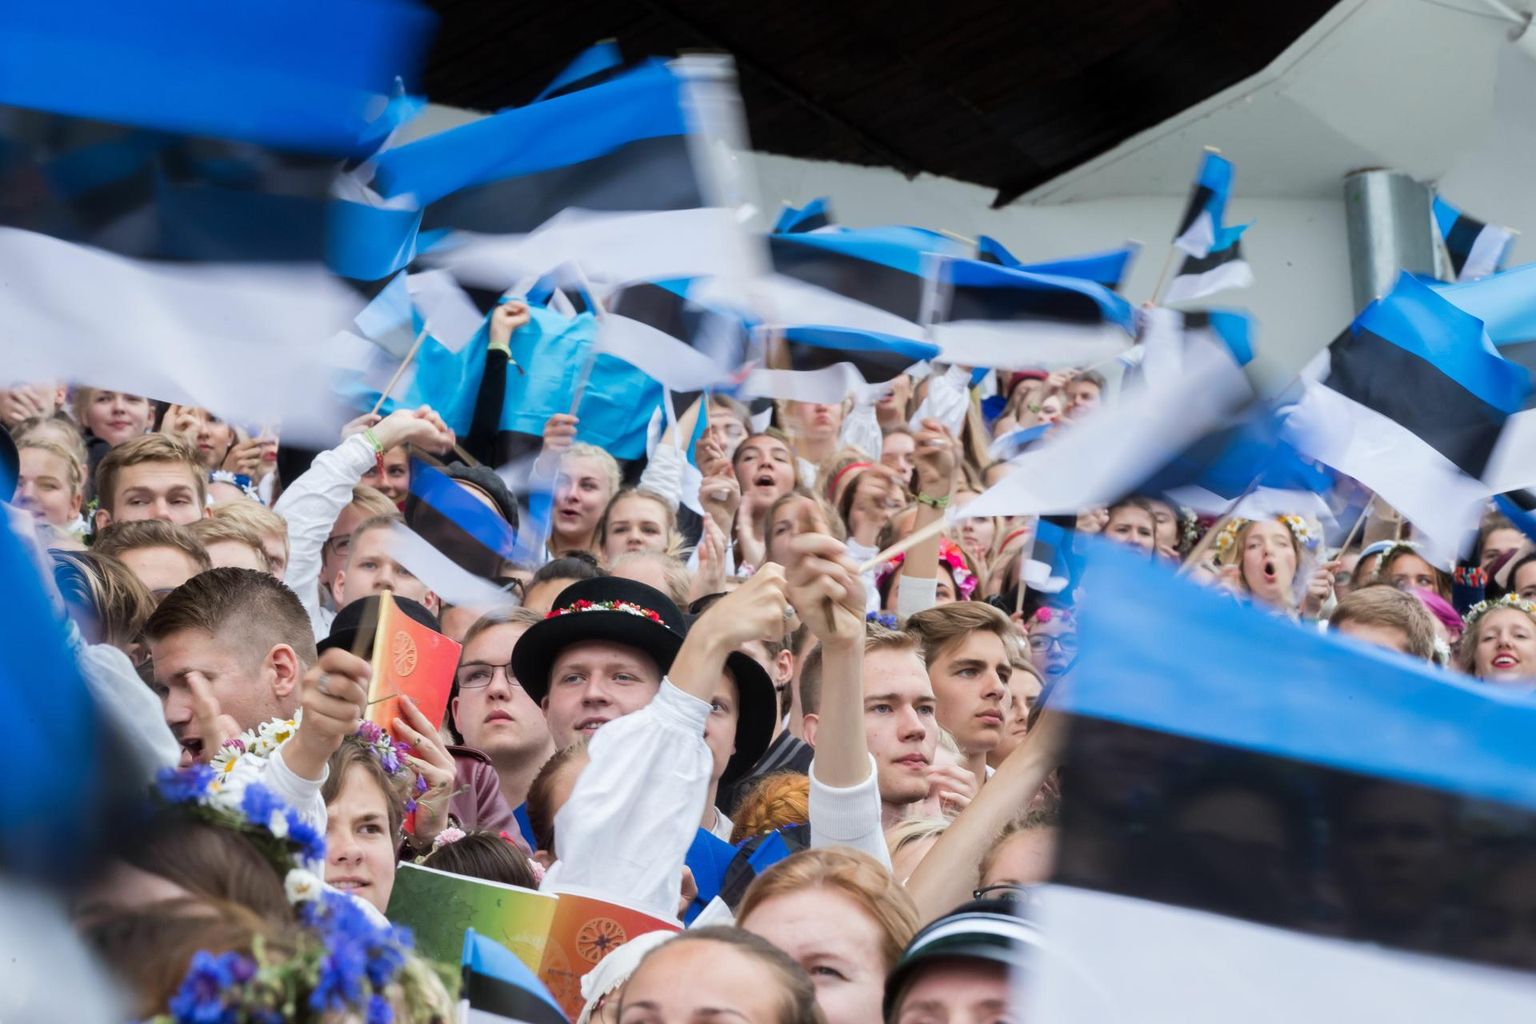 XIII noorte laulu- ja tantsupidu toimub 30. juunist 2. juulini Tallinnas.